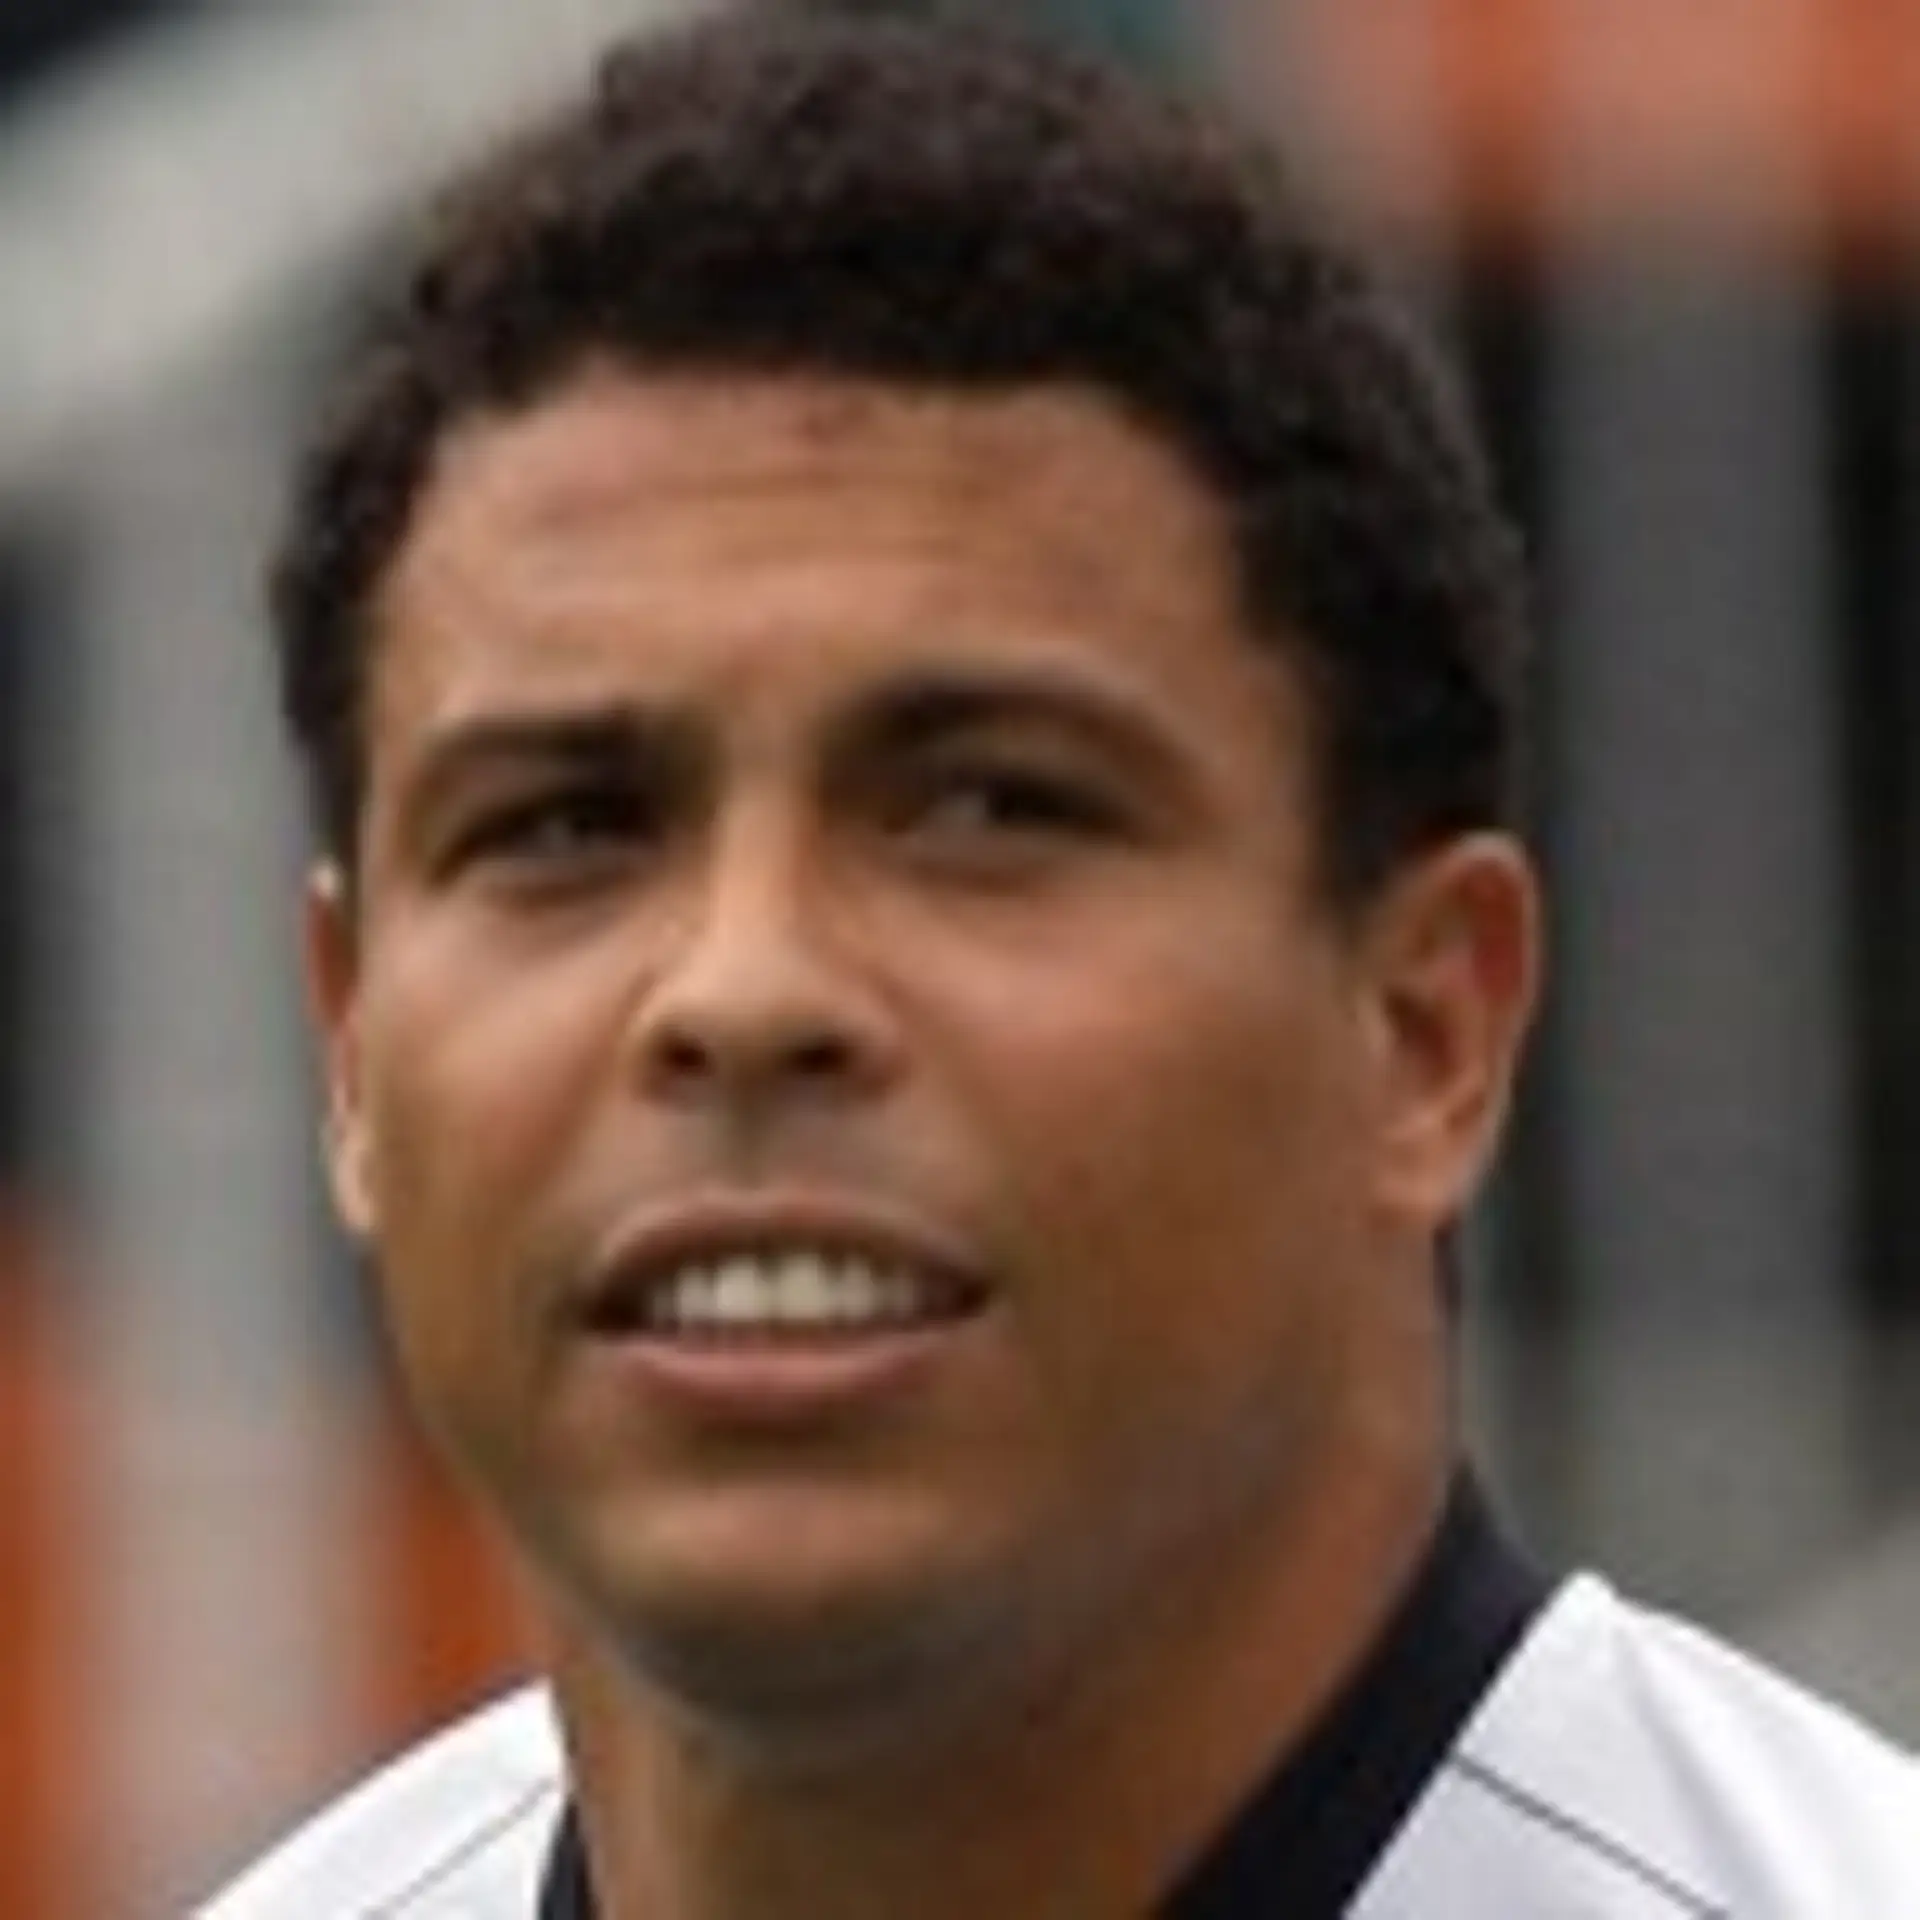 Ronaldo Luíz Nazário de Lima